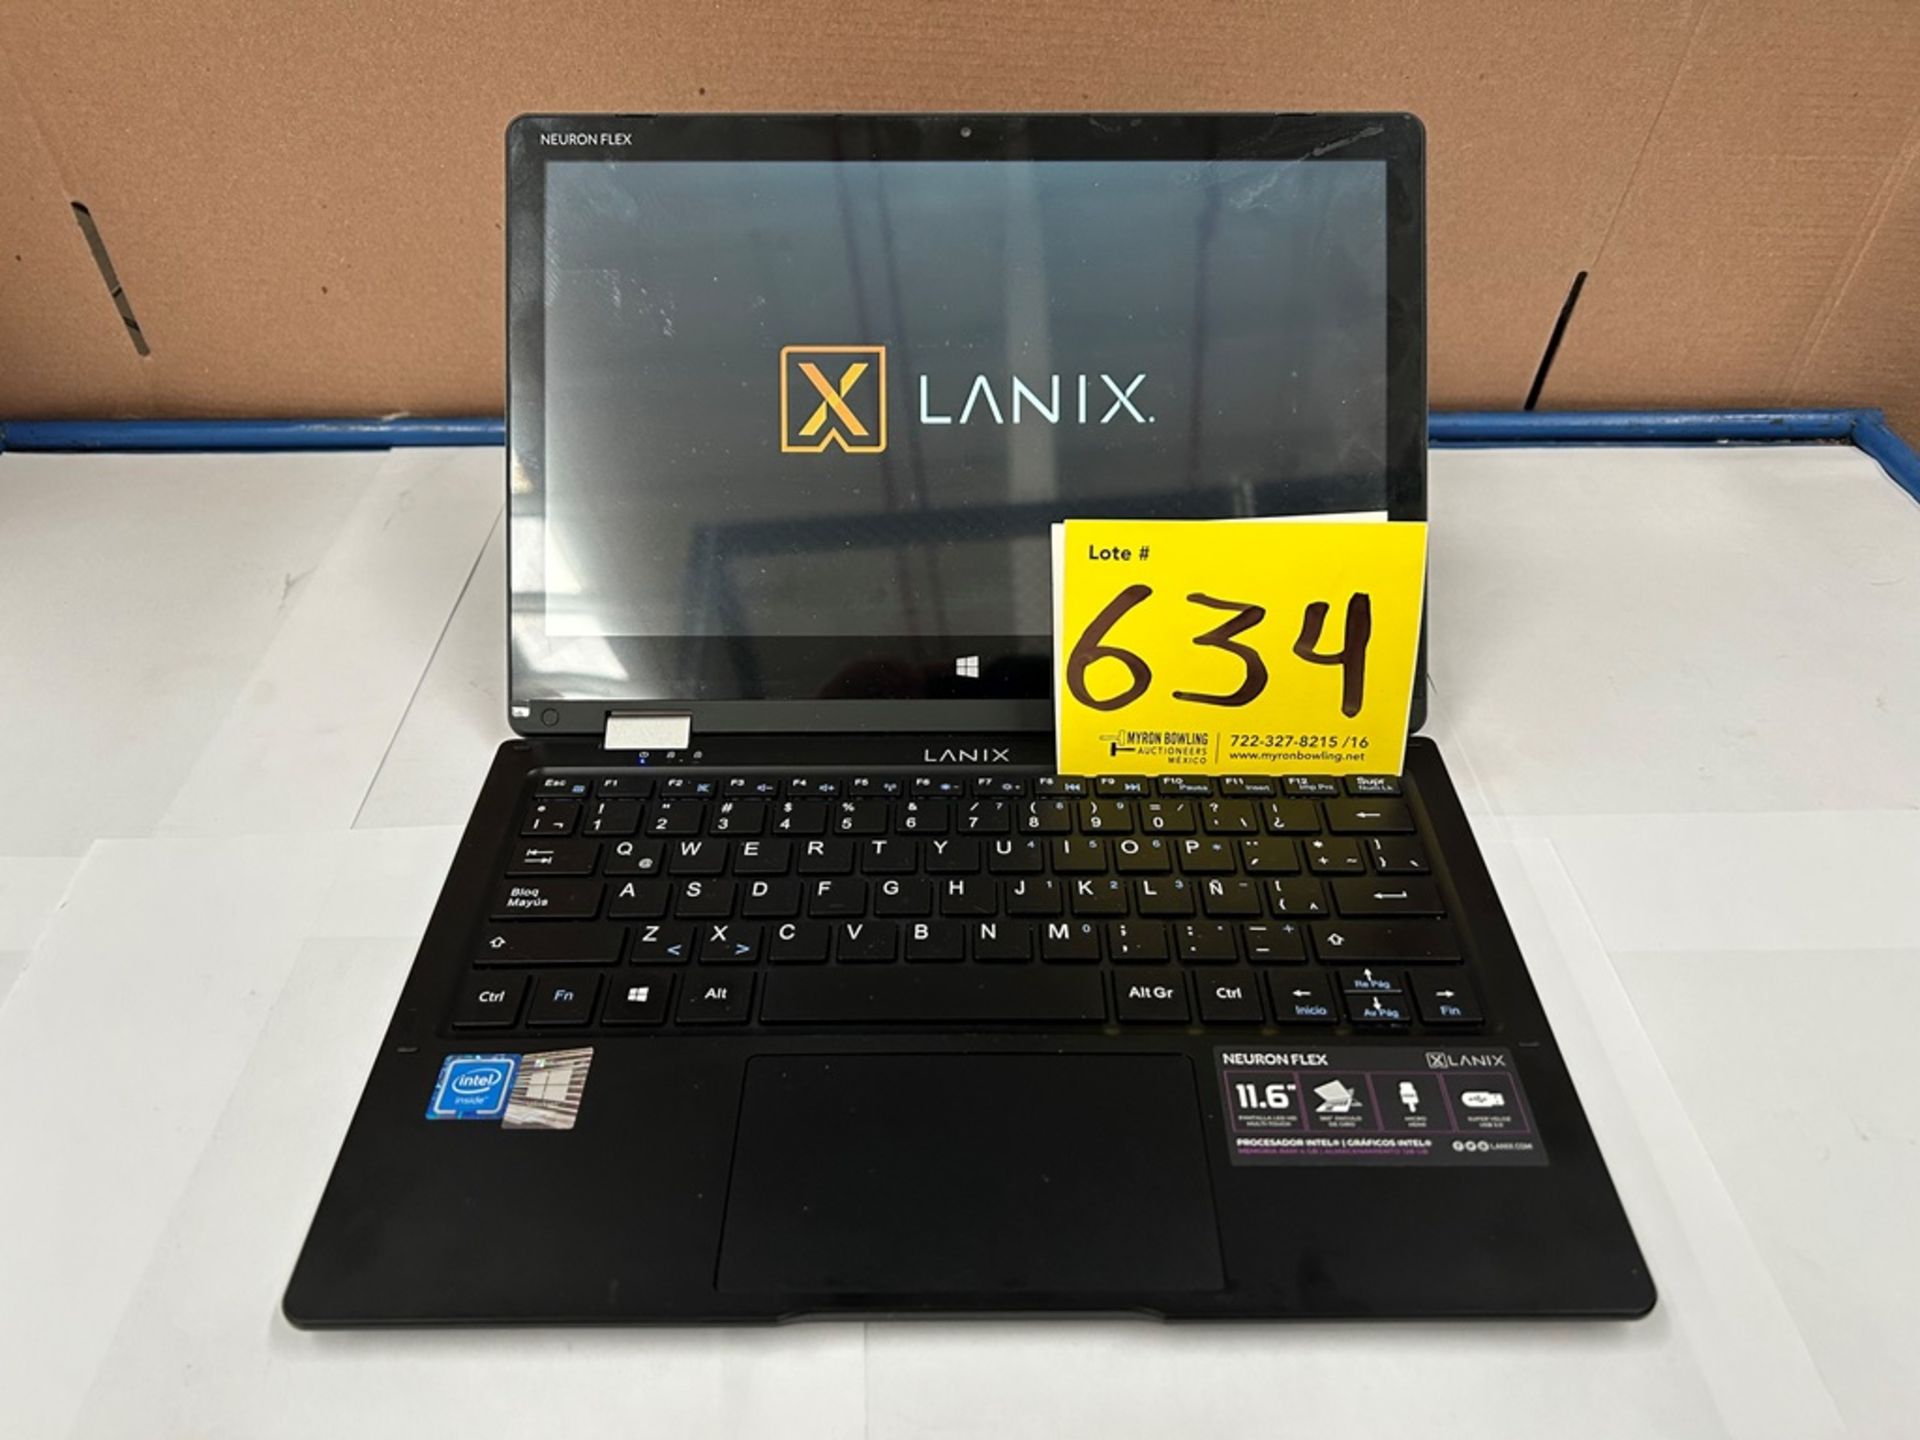 Laptop Marca LANIX, Modelo NEURONFLEX, con capacidad de 128 GB de almacenamiento, 4 GB de RAM (Equi